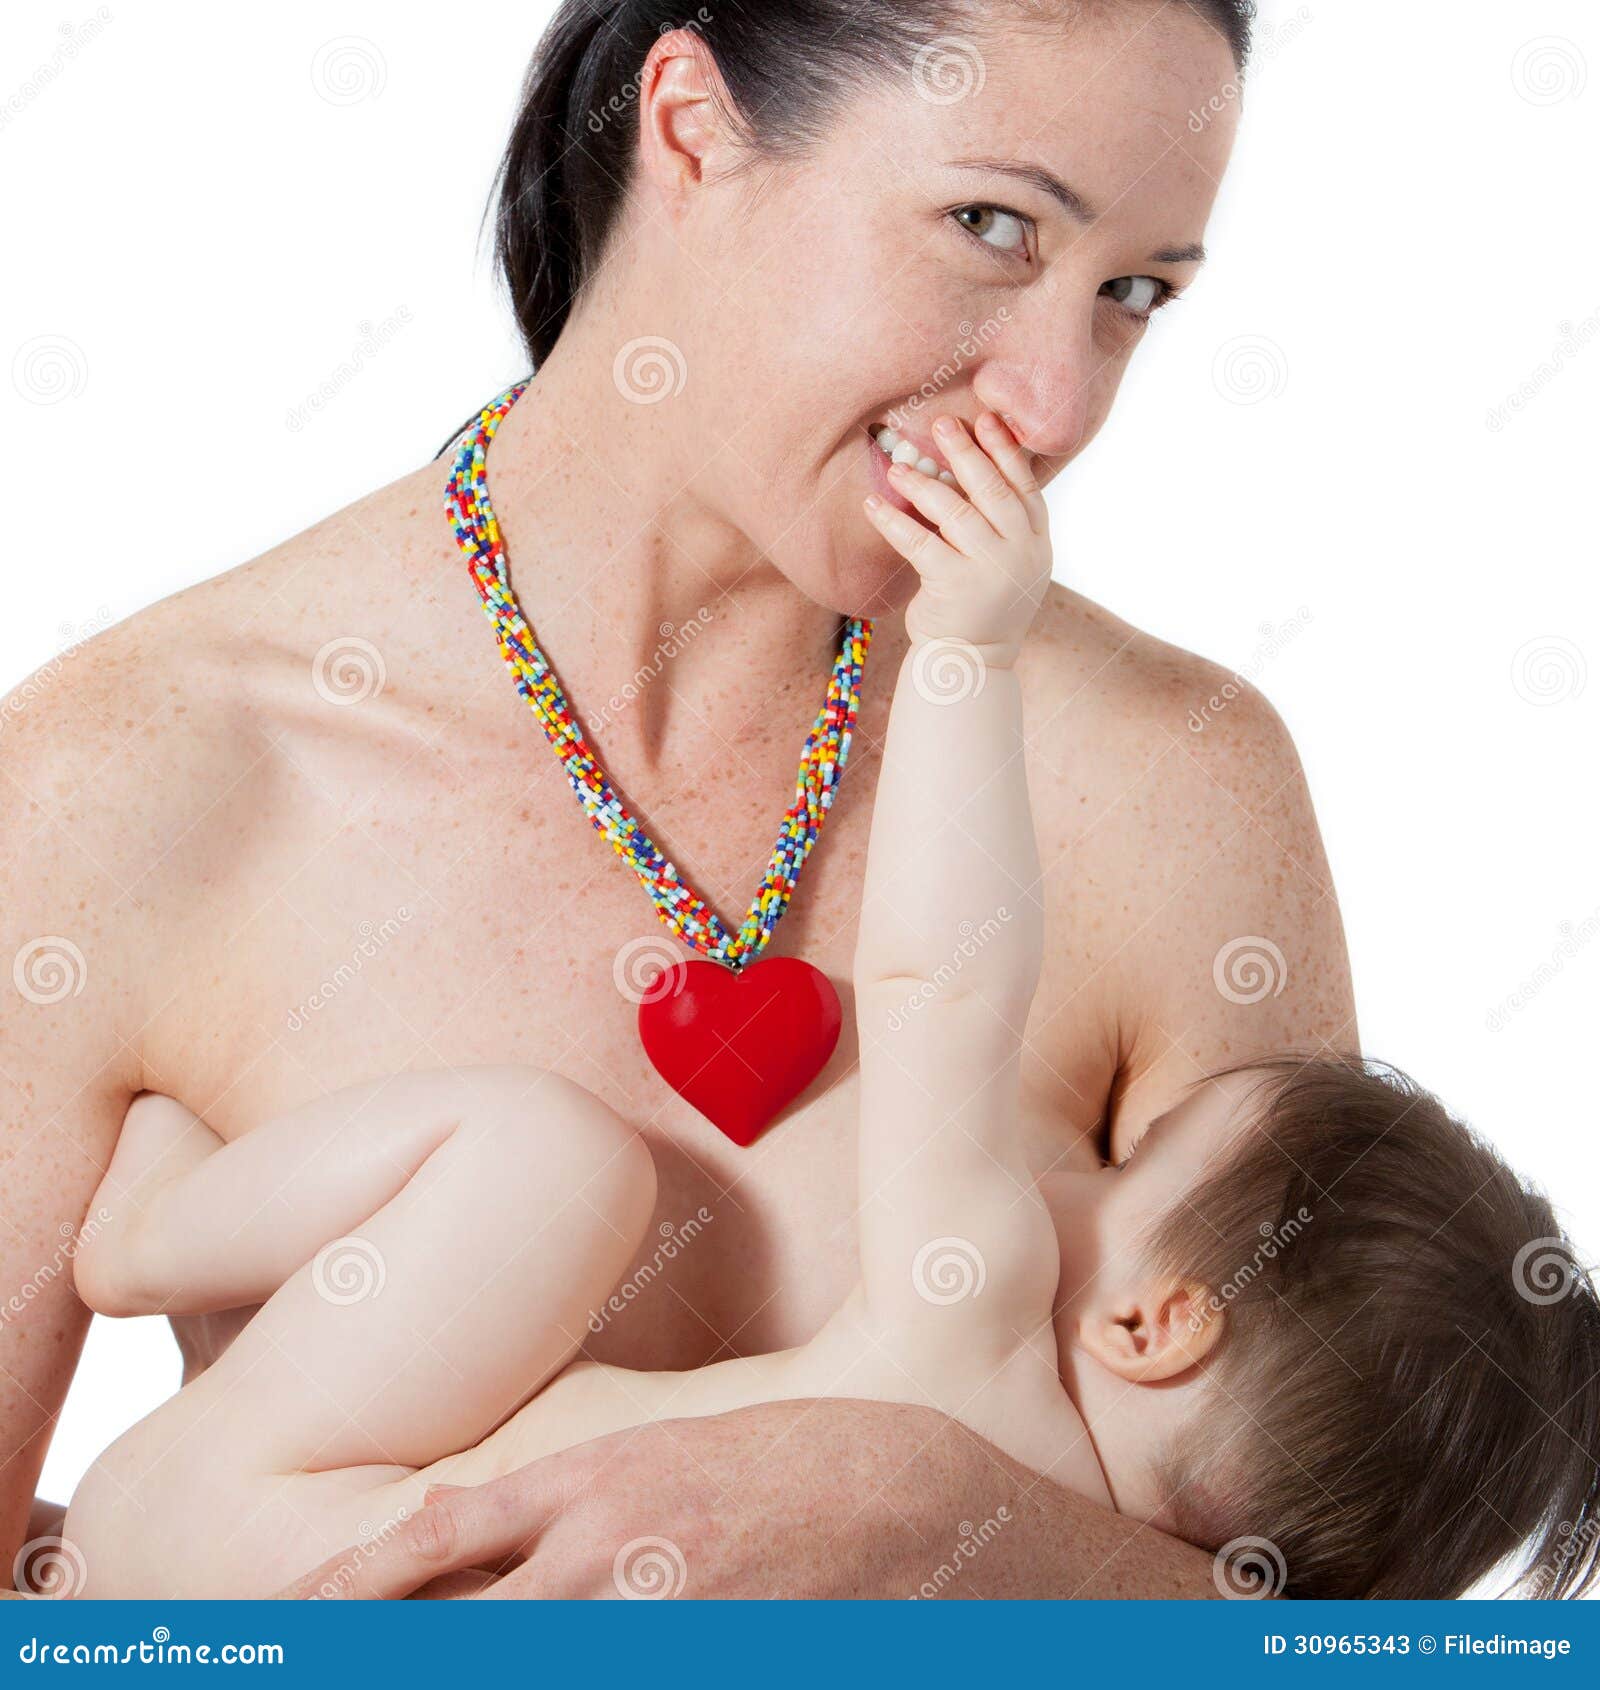 сын держит за грудь маму фото 23